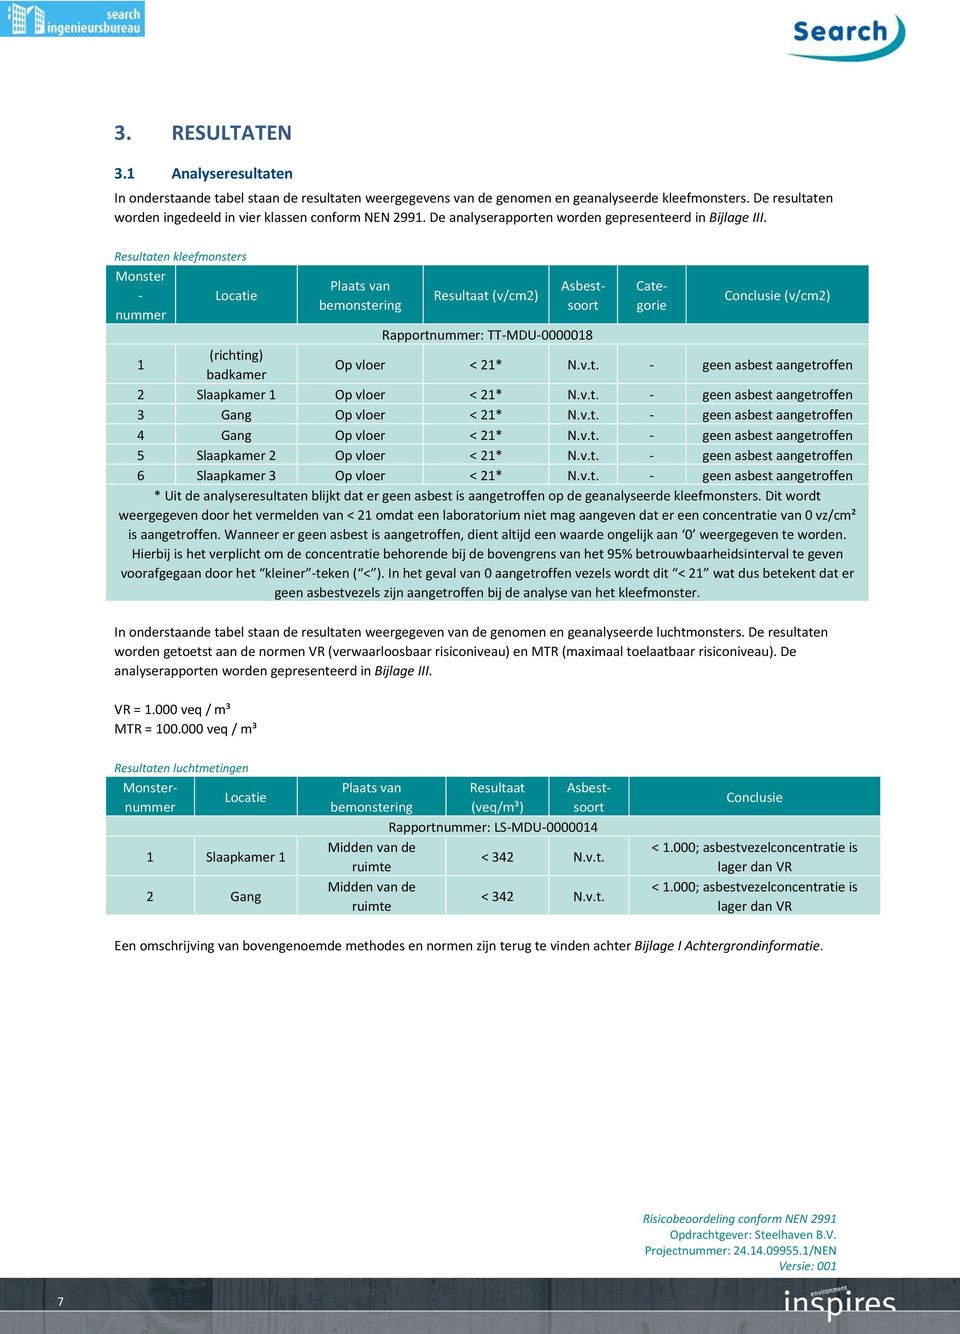 In onderstaande tabel staan de resultaten weergegeven van de genomen en geanalyseerde luchtmonsters.